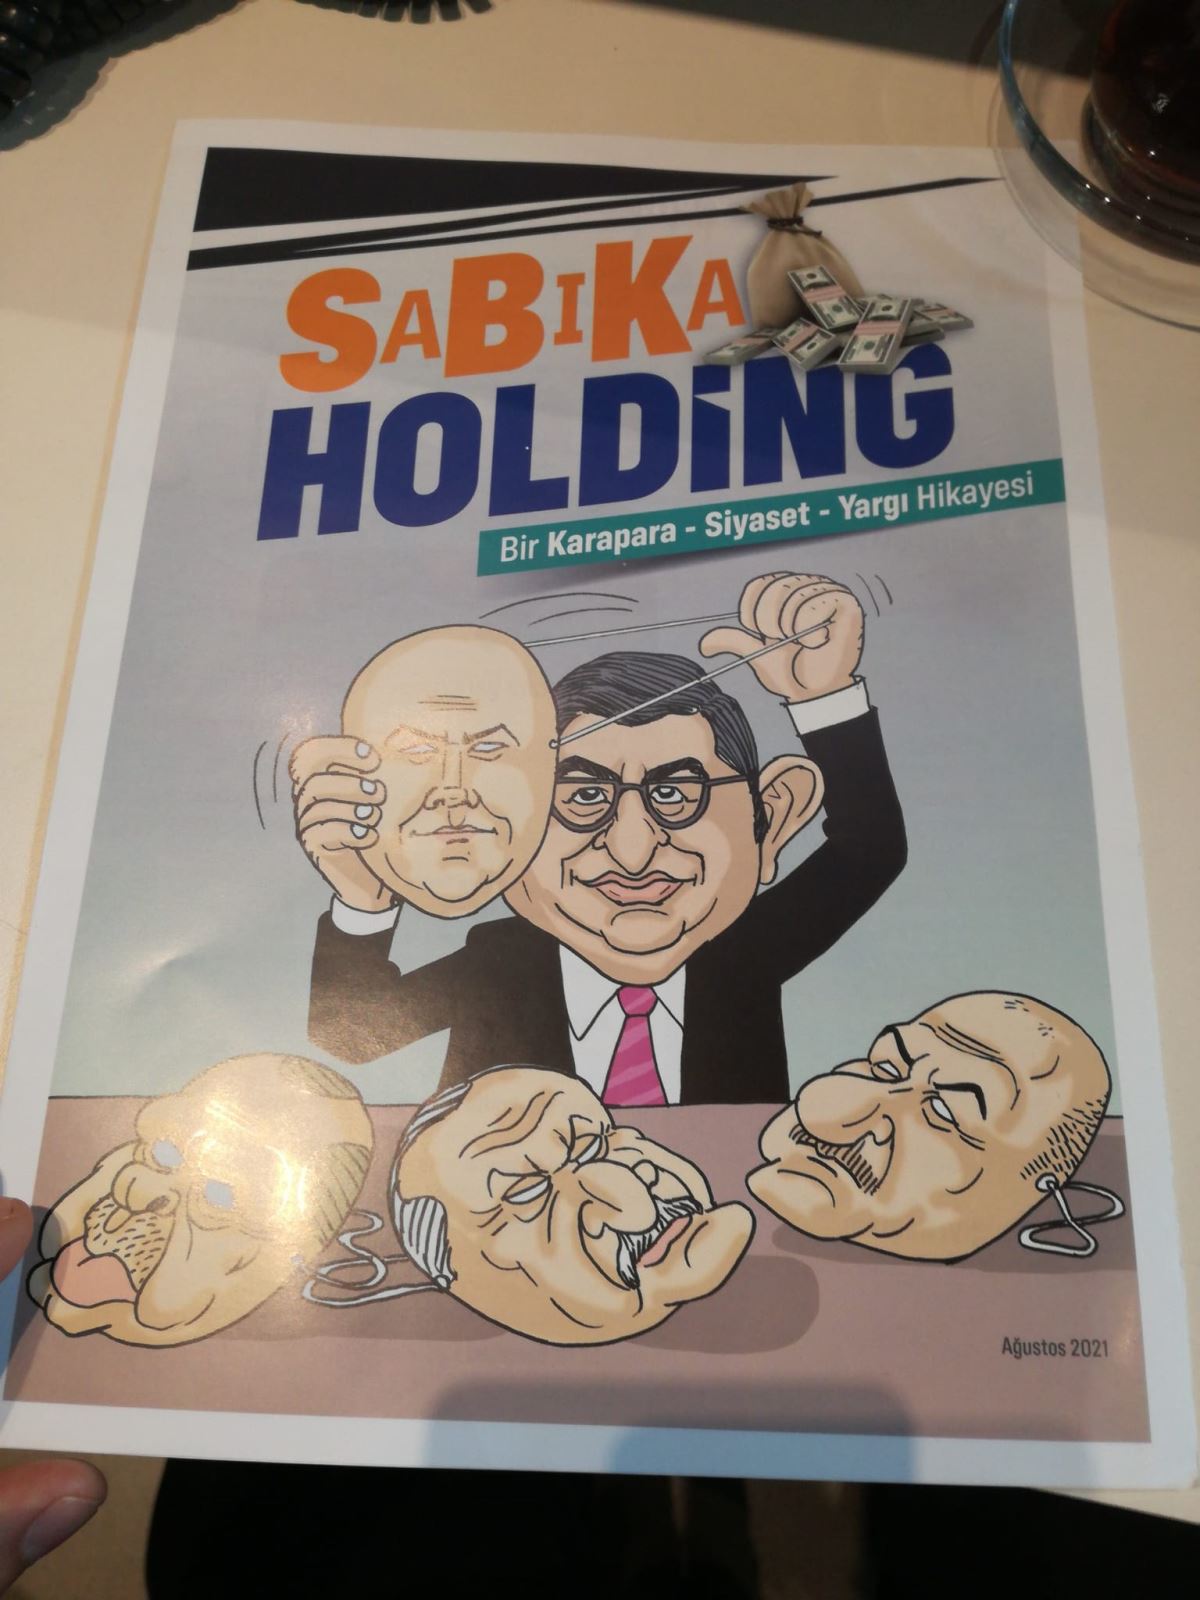 Kadıköy'de CHP’nin ‘SaBıKa Holding’ kitapçığına gözaltı